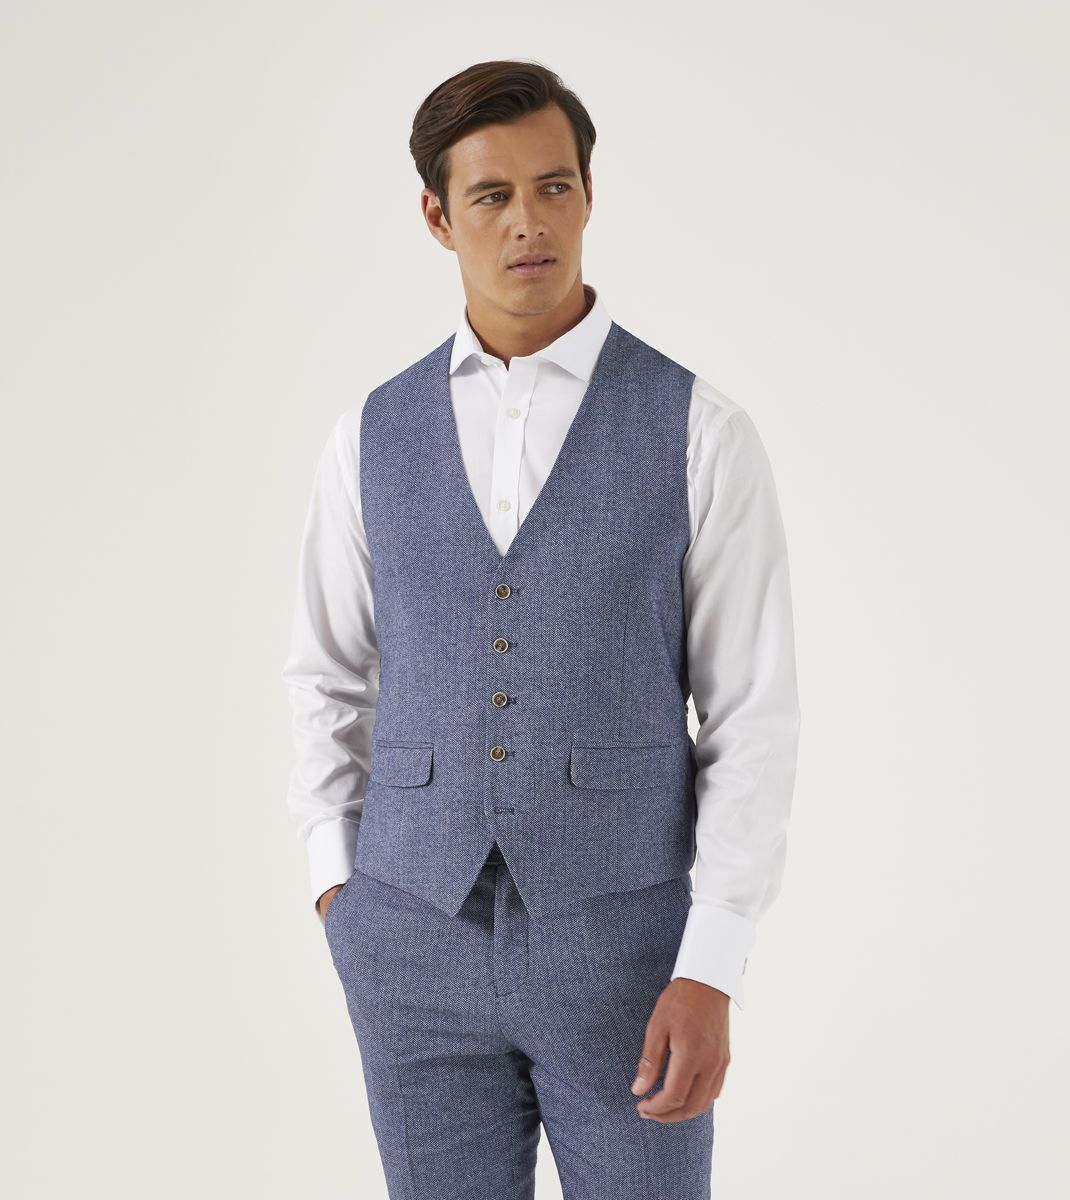 Jude Tweed Suit Jacket - Blue